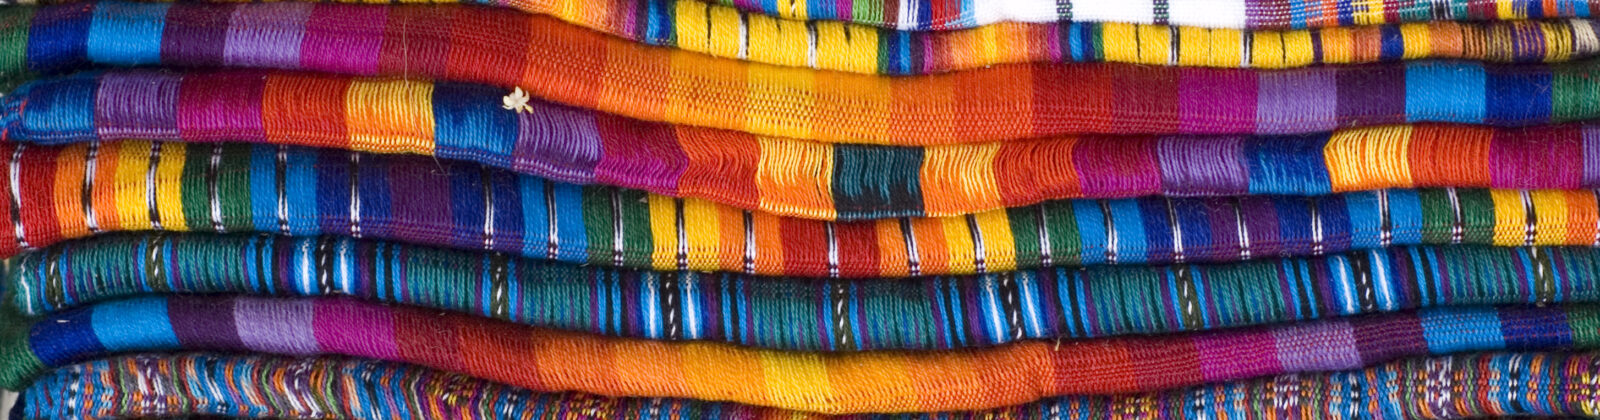 Multi-colored woven fabric